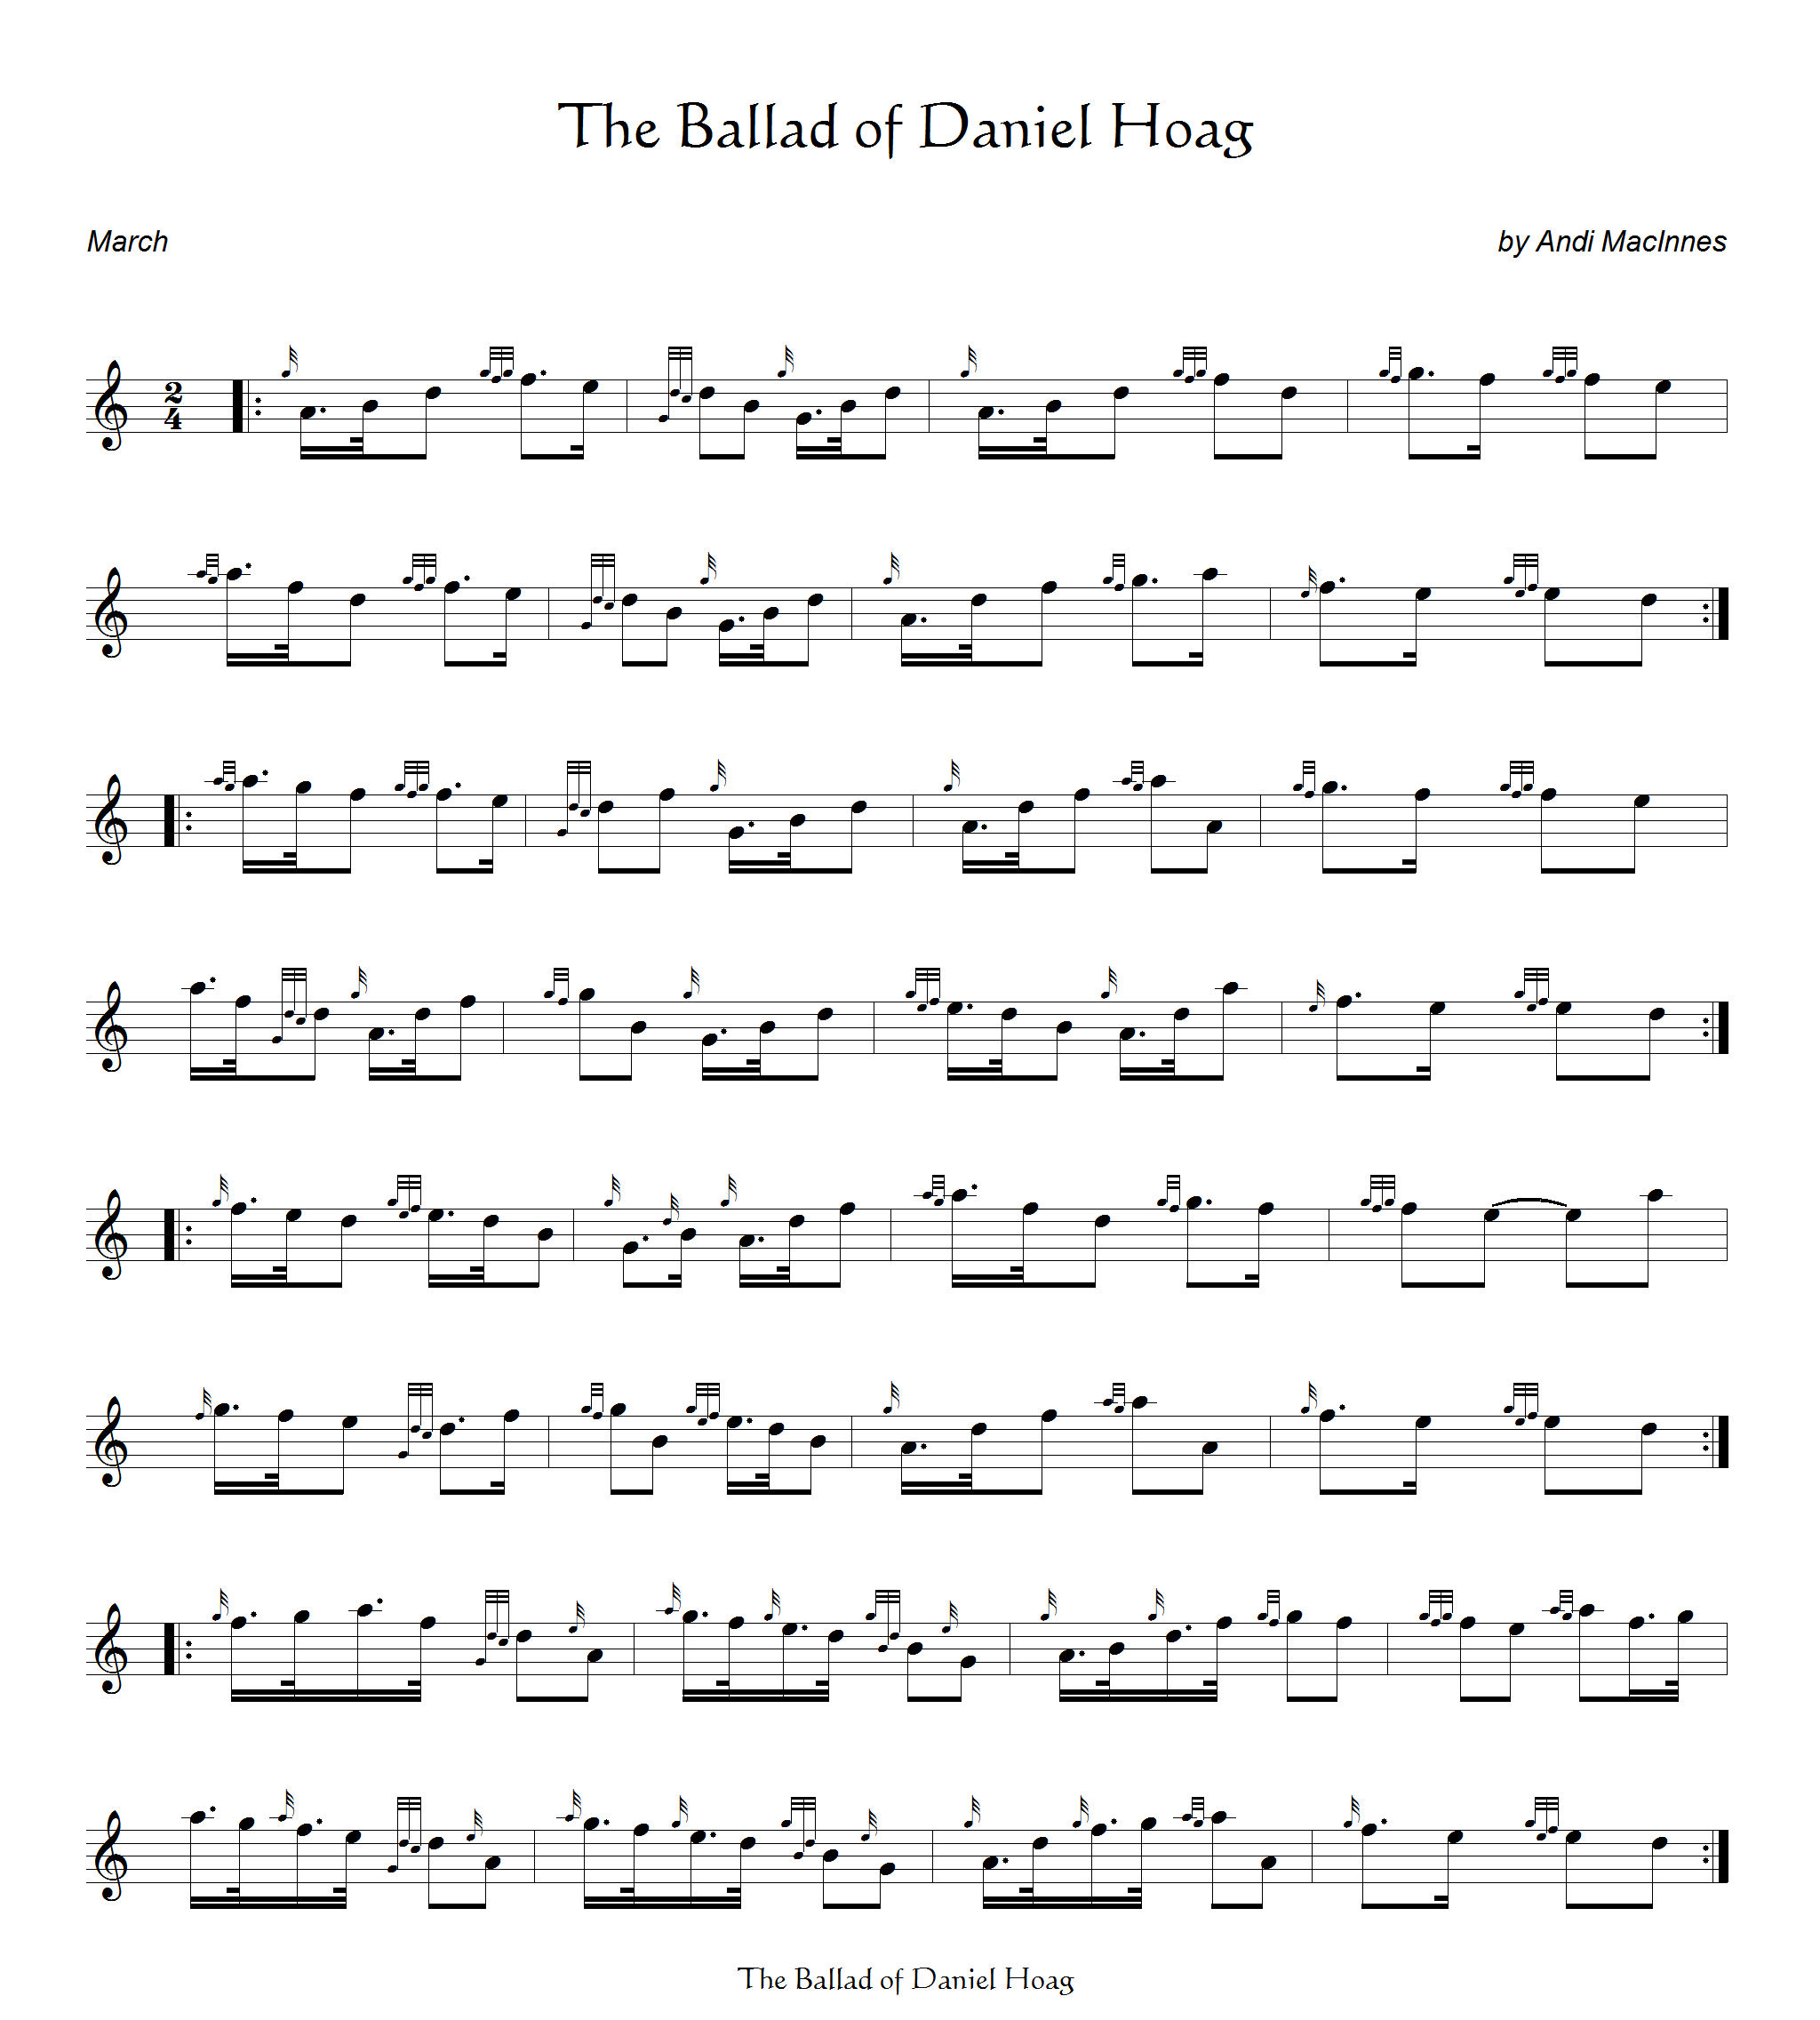 The Ballad of Daniel Hoag.jpg